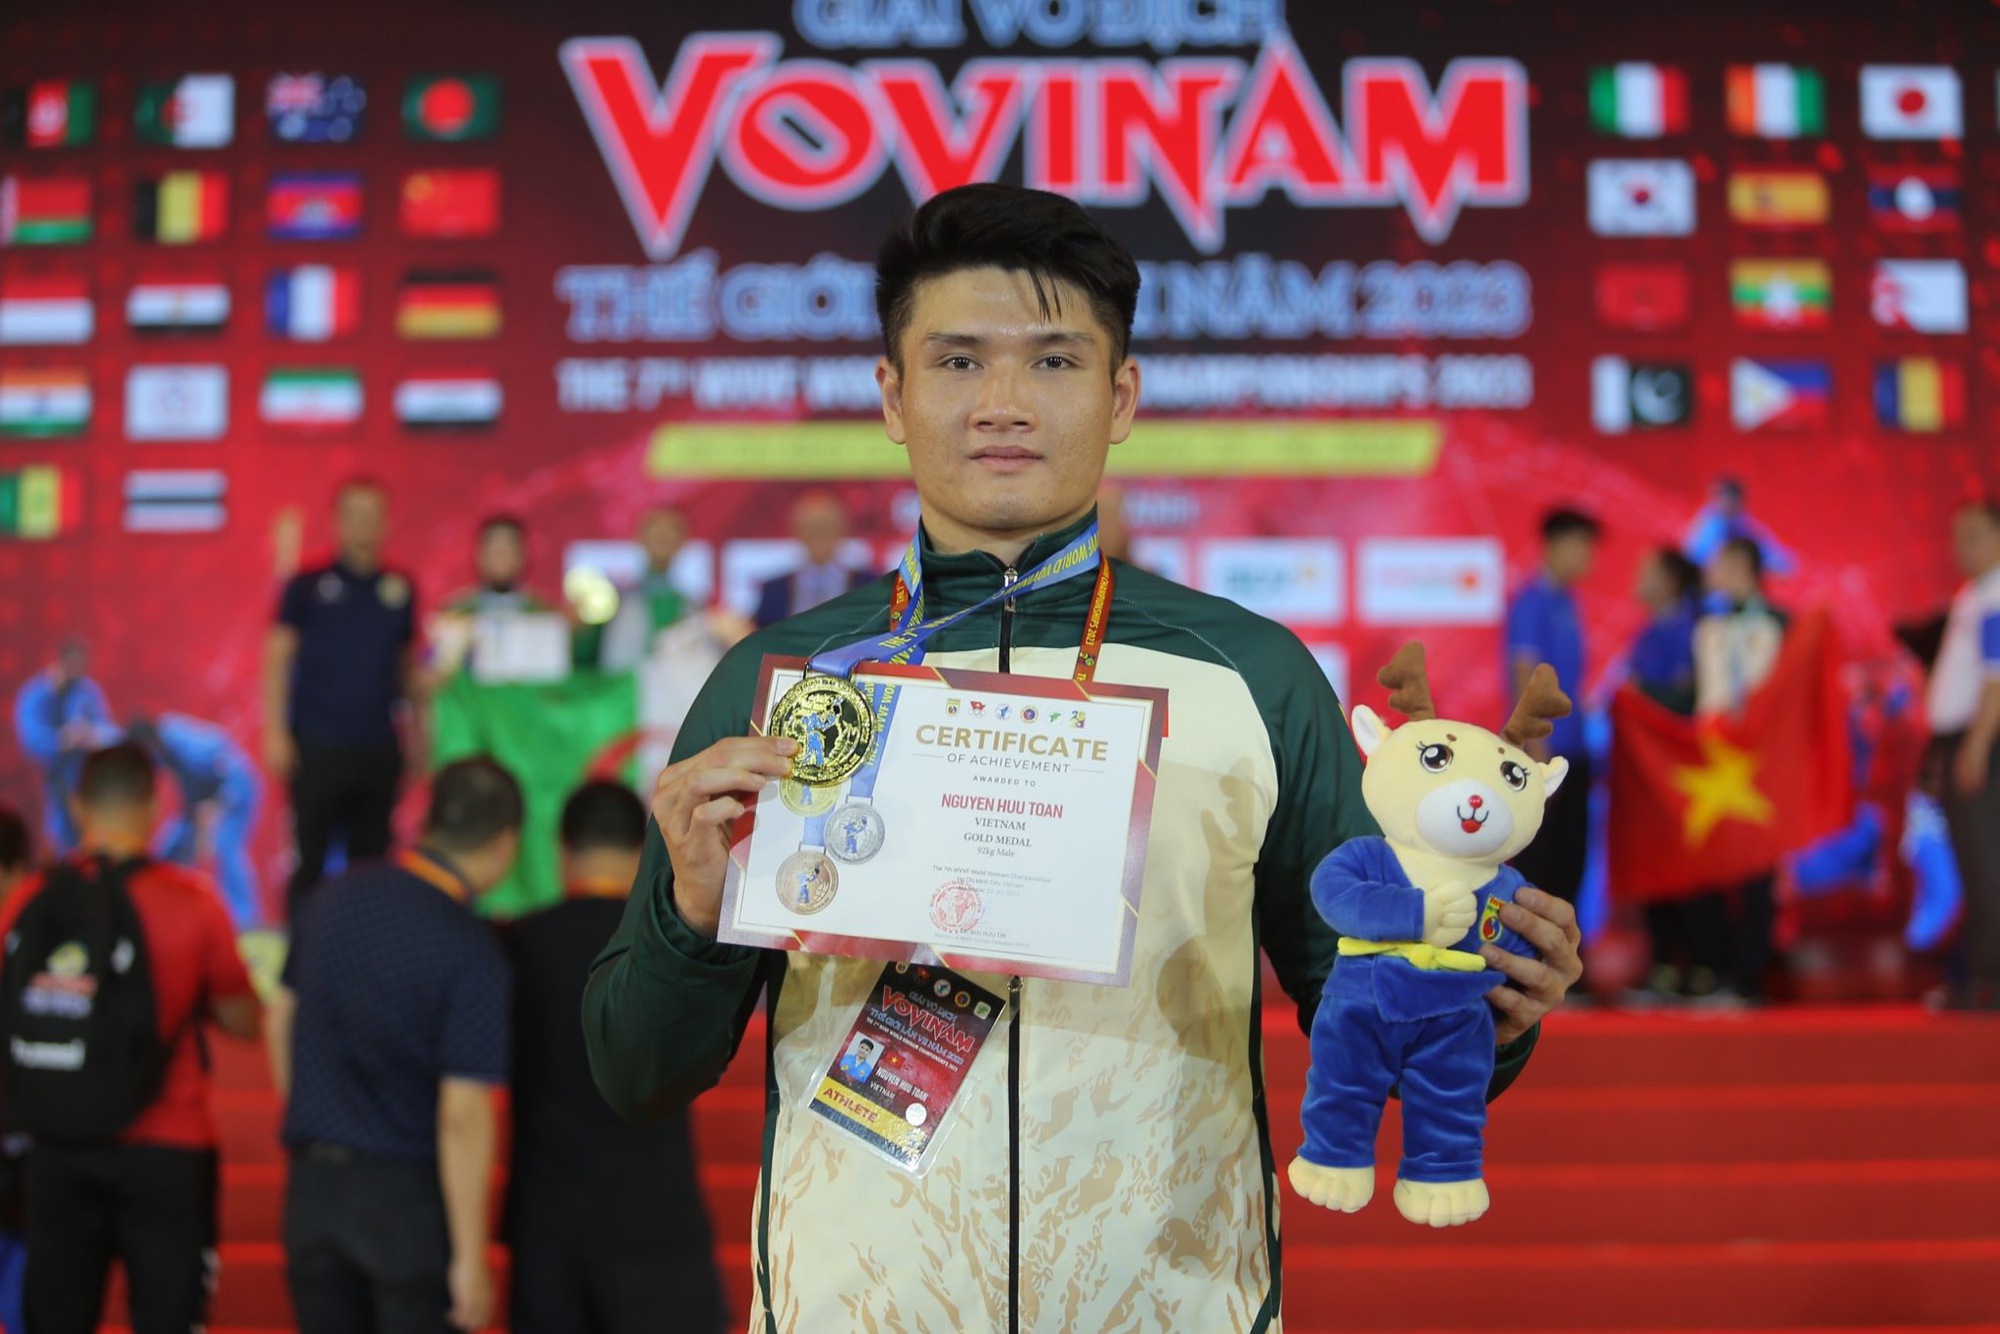 Giải vô địch Vovinam thế giới: Tấm HCV đáng nhớ của võ sĩ Nam Định - Ảnh 1.